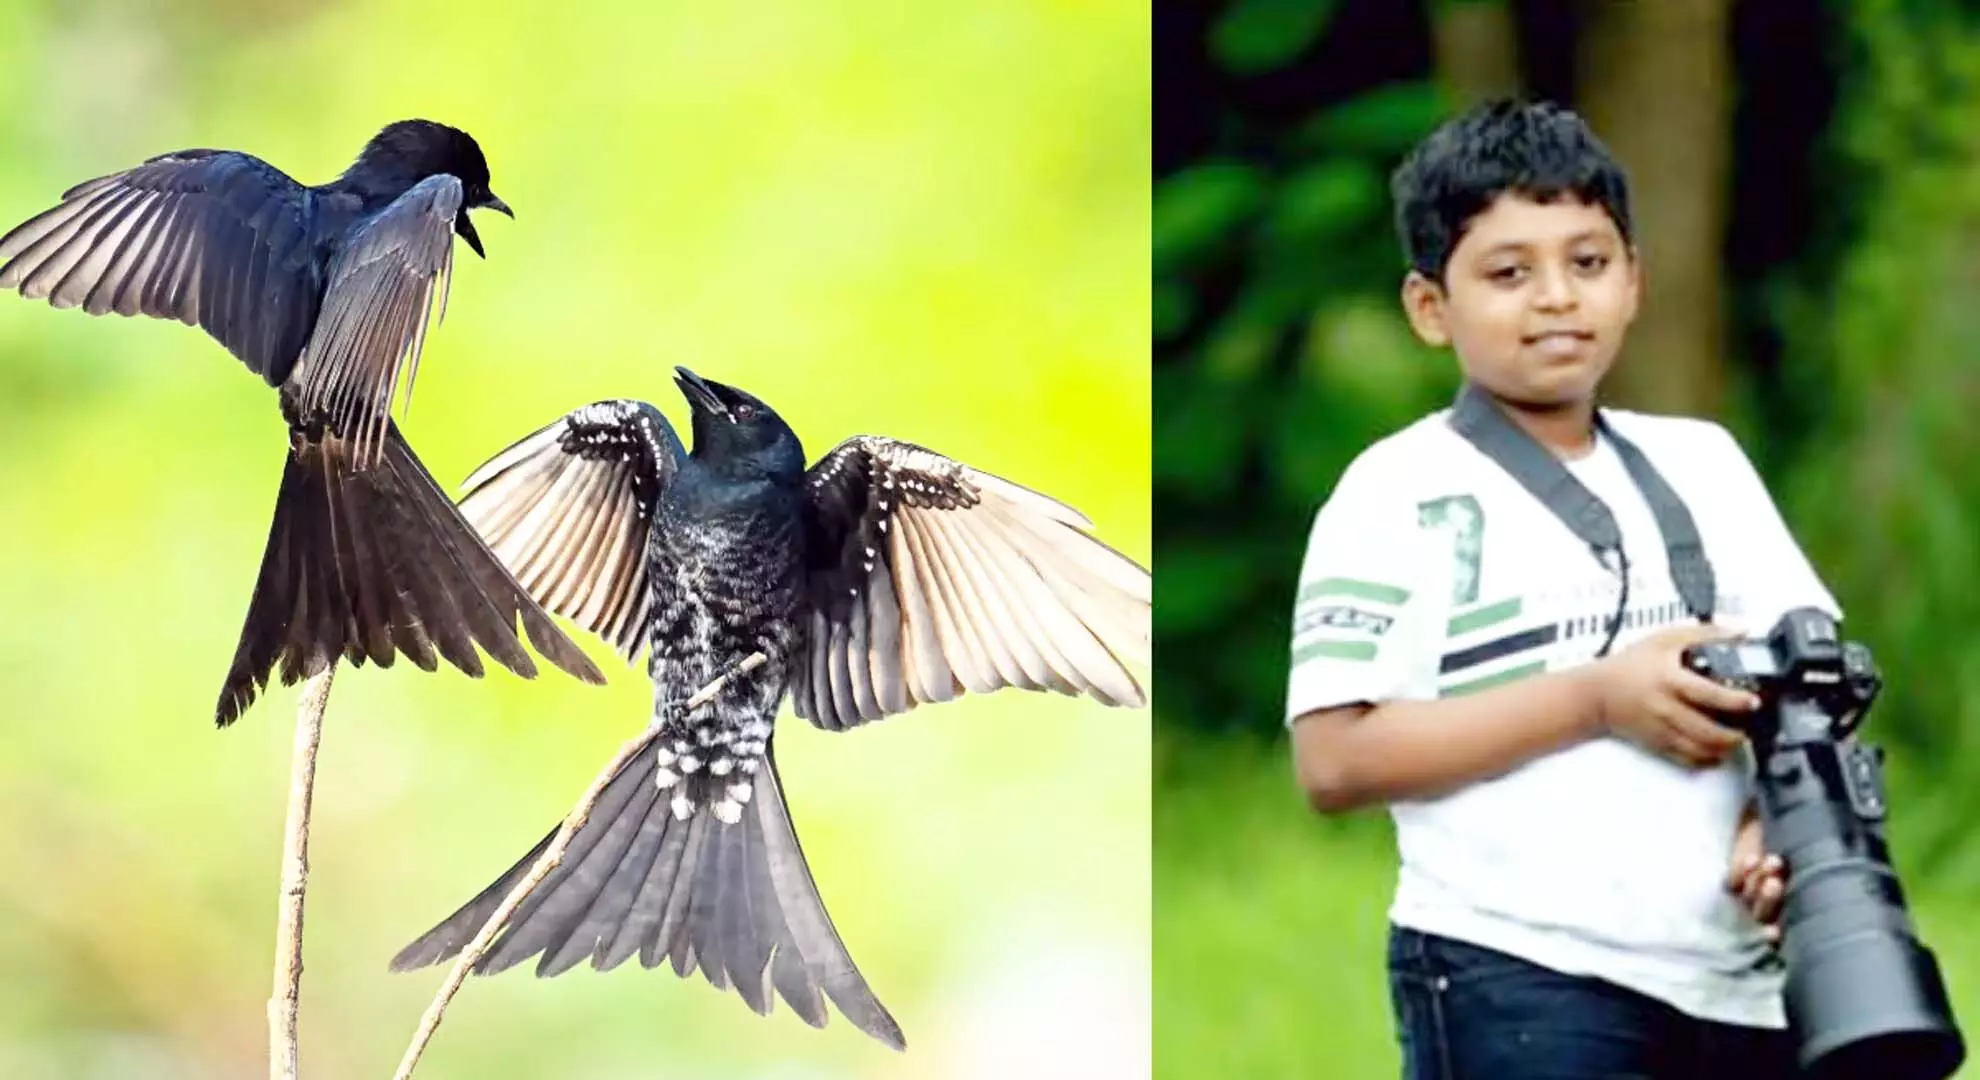 आंध्र प्रदेश: 11 वर्षीय बच्चे की फोटोग्राफी कौशल ने सभी को आश्चर्यचकित कर दिया!